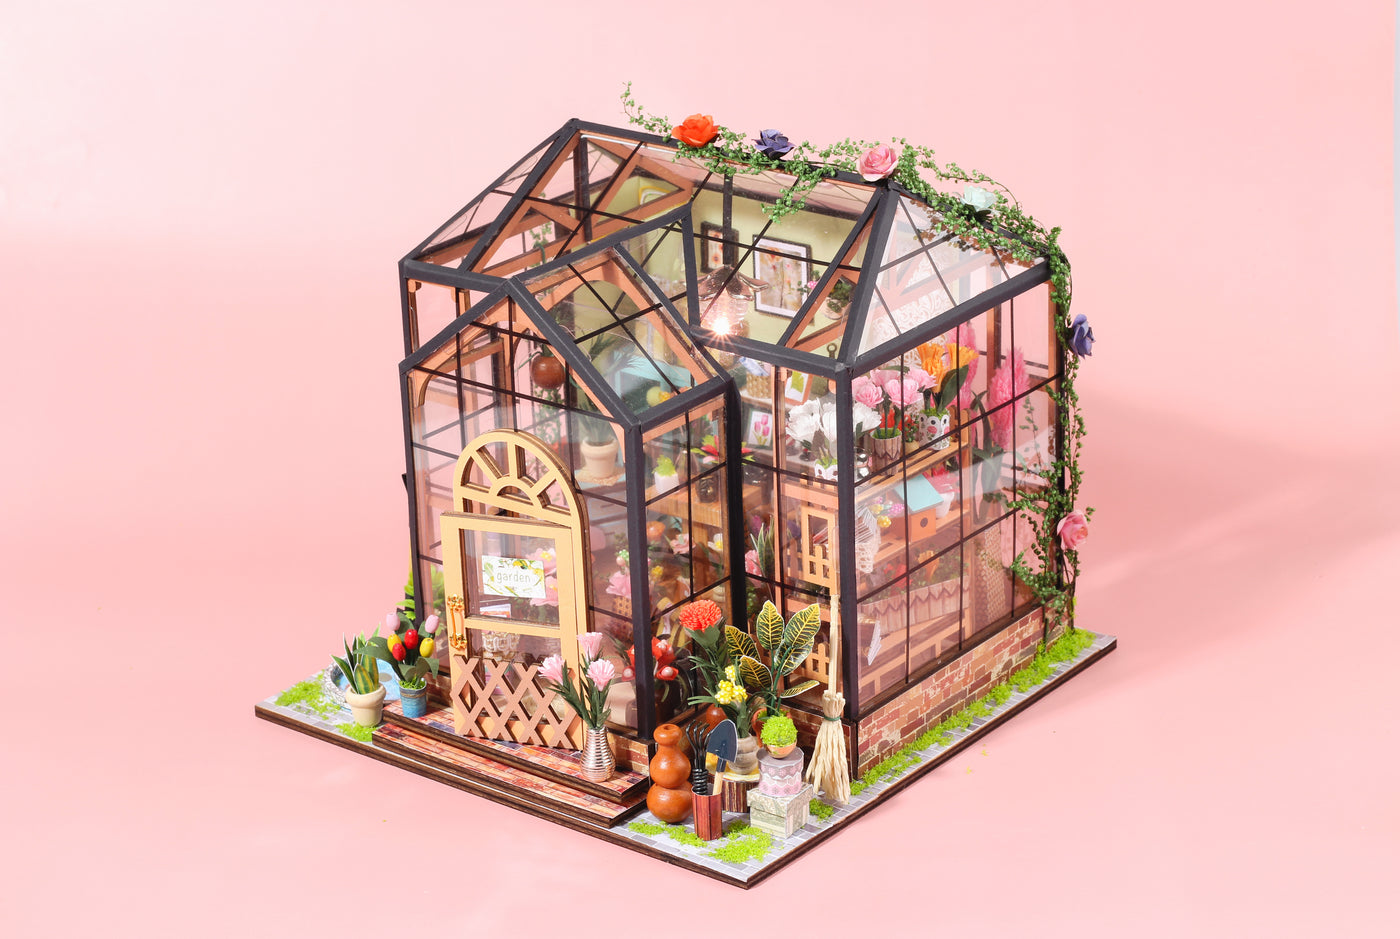 Kit de maison de poupée miniature Jenny's Greenhouse